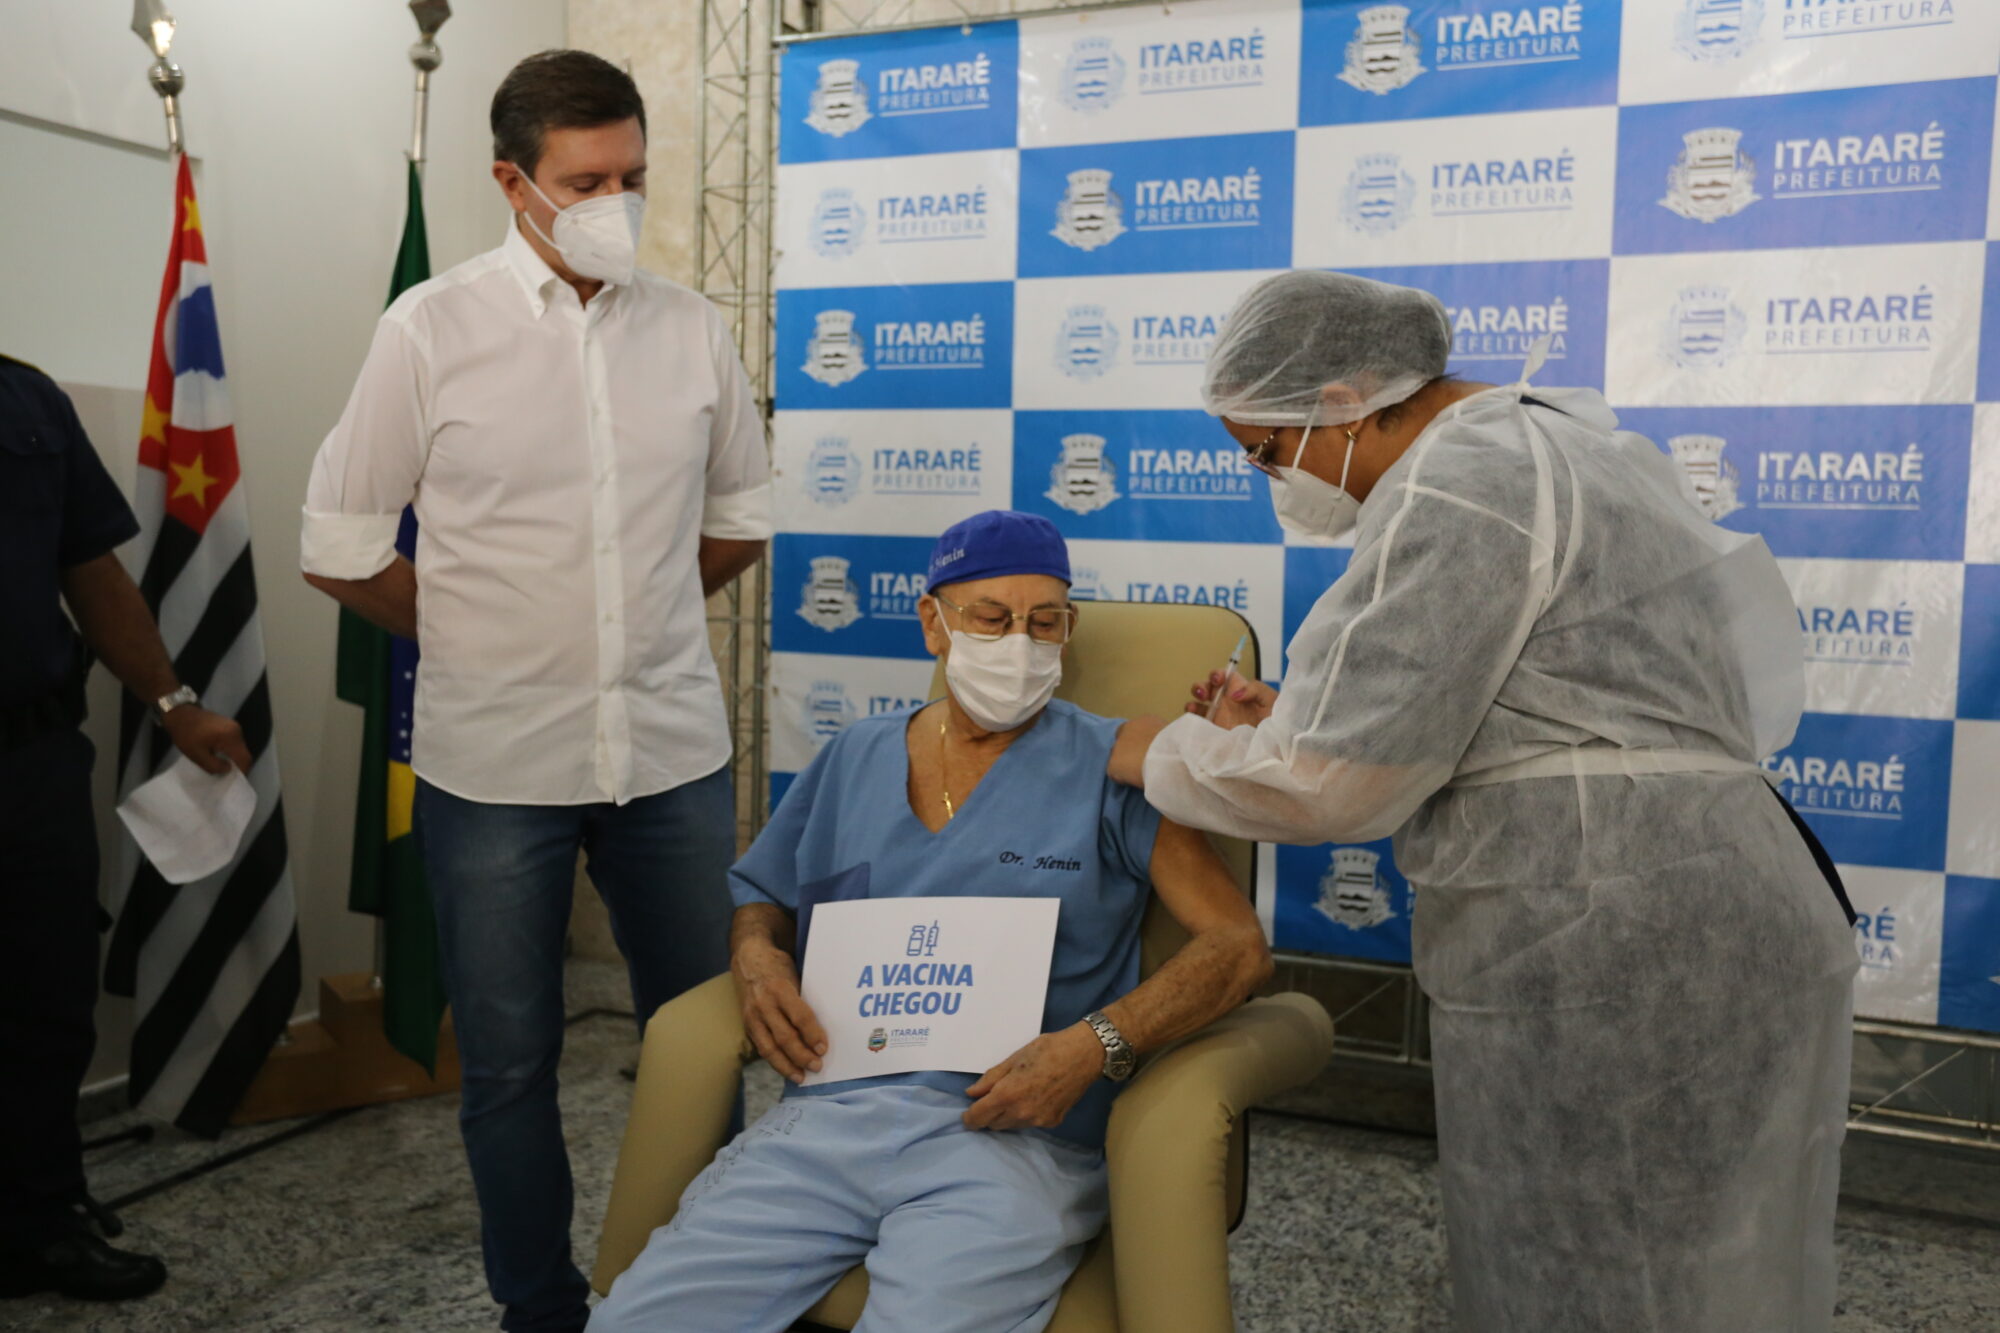 A vacina chegou: Prefeitura de Itararé (SP) inicia imunização de profissionais de Saúde contra a covid-19